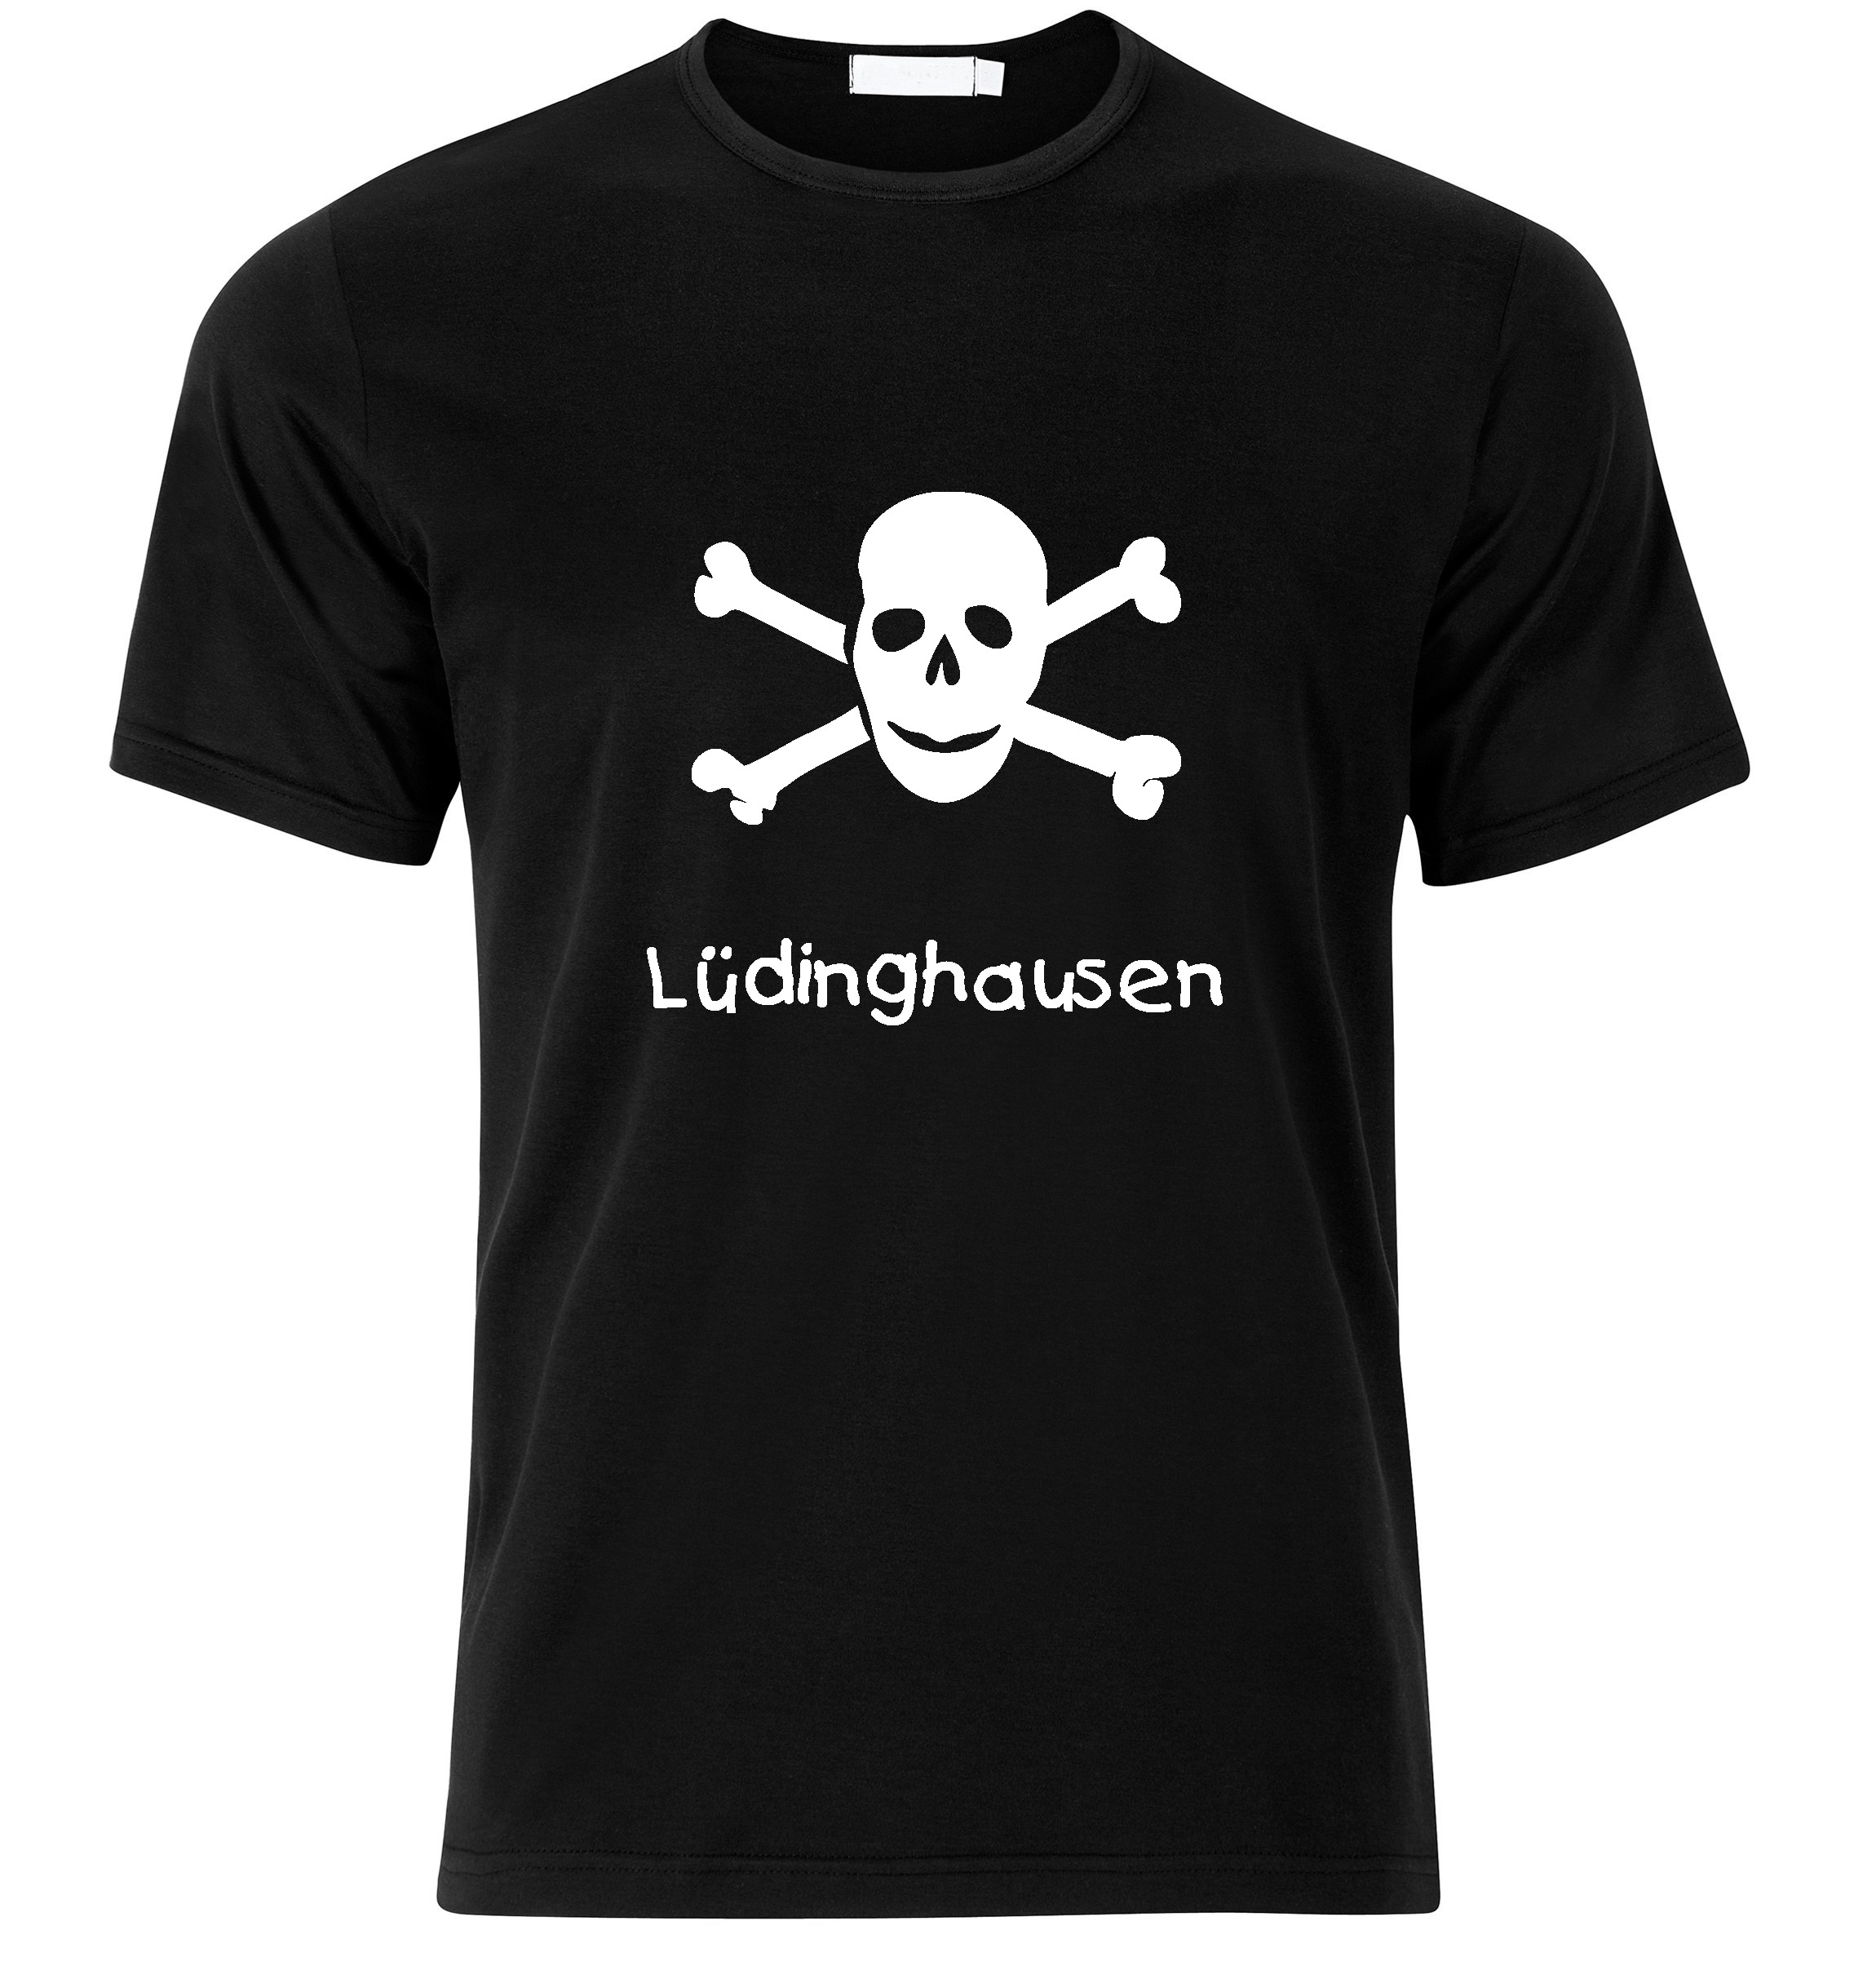 T-Shirt Lüdinghausen Jolly Roger, Totenkopf